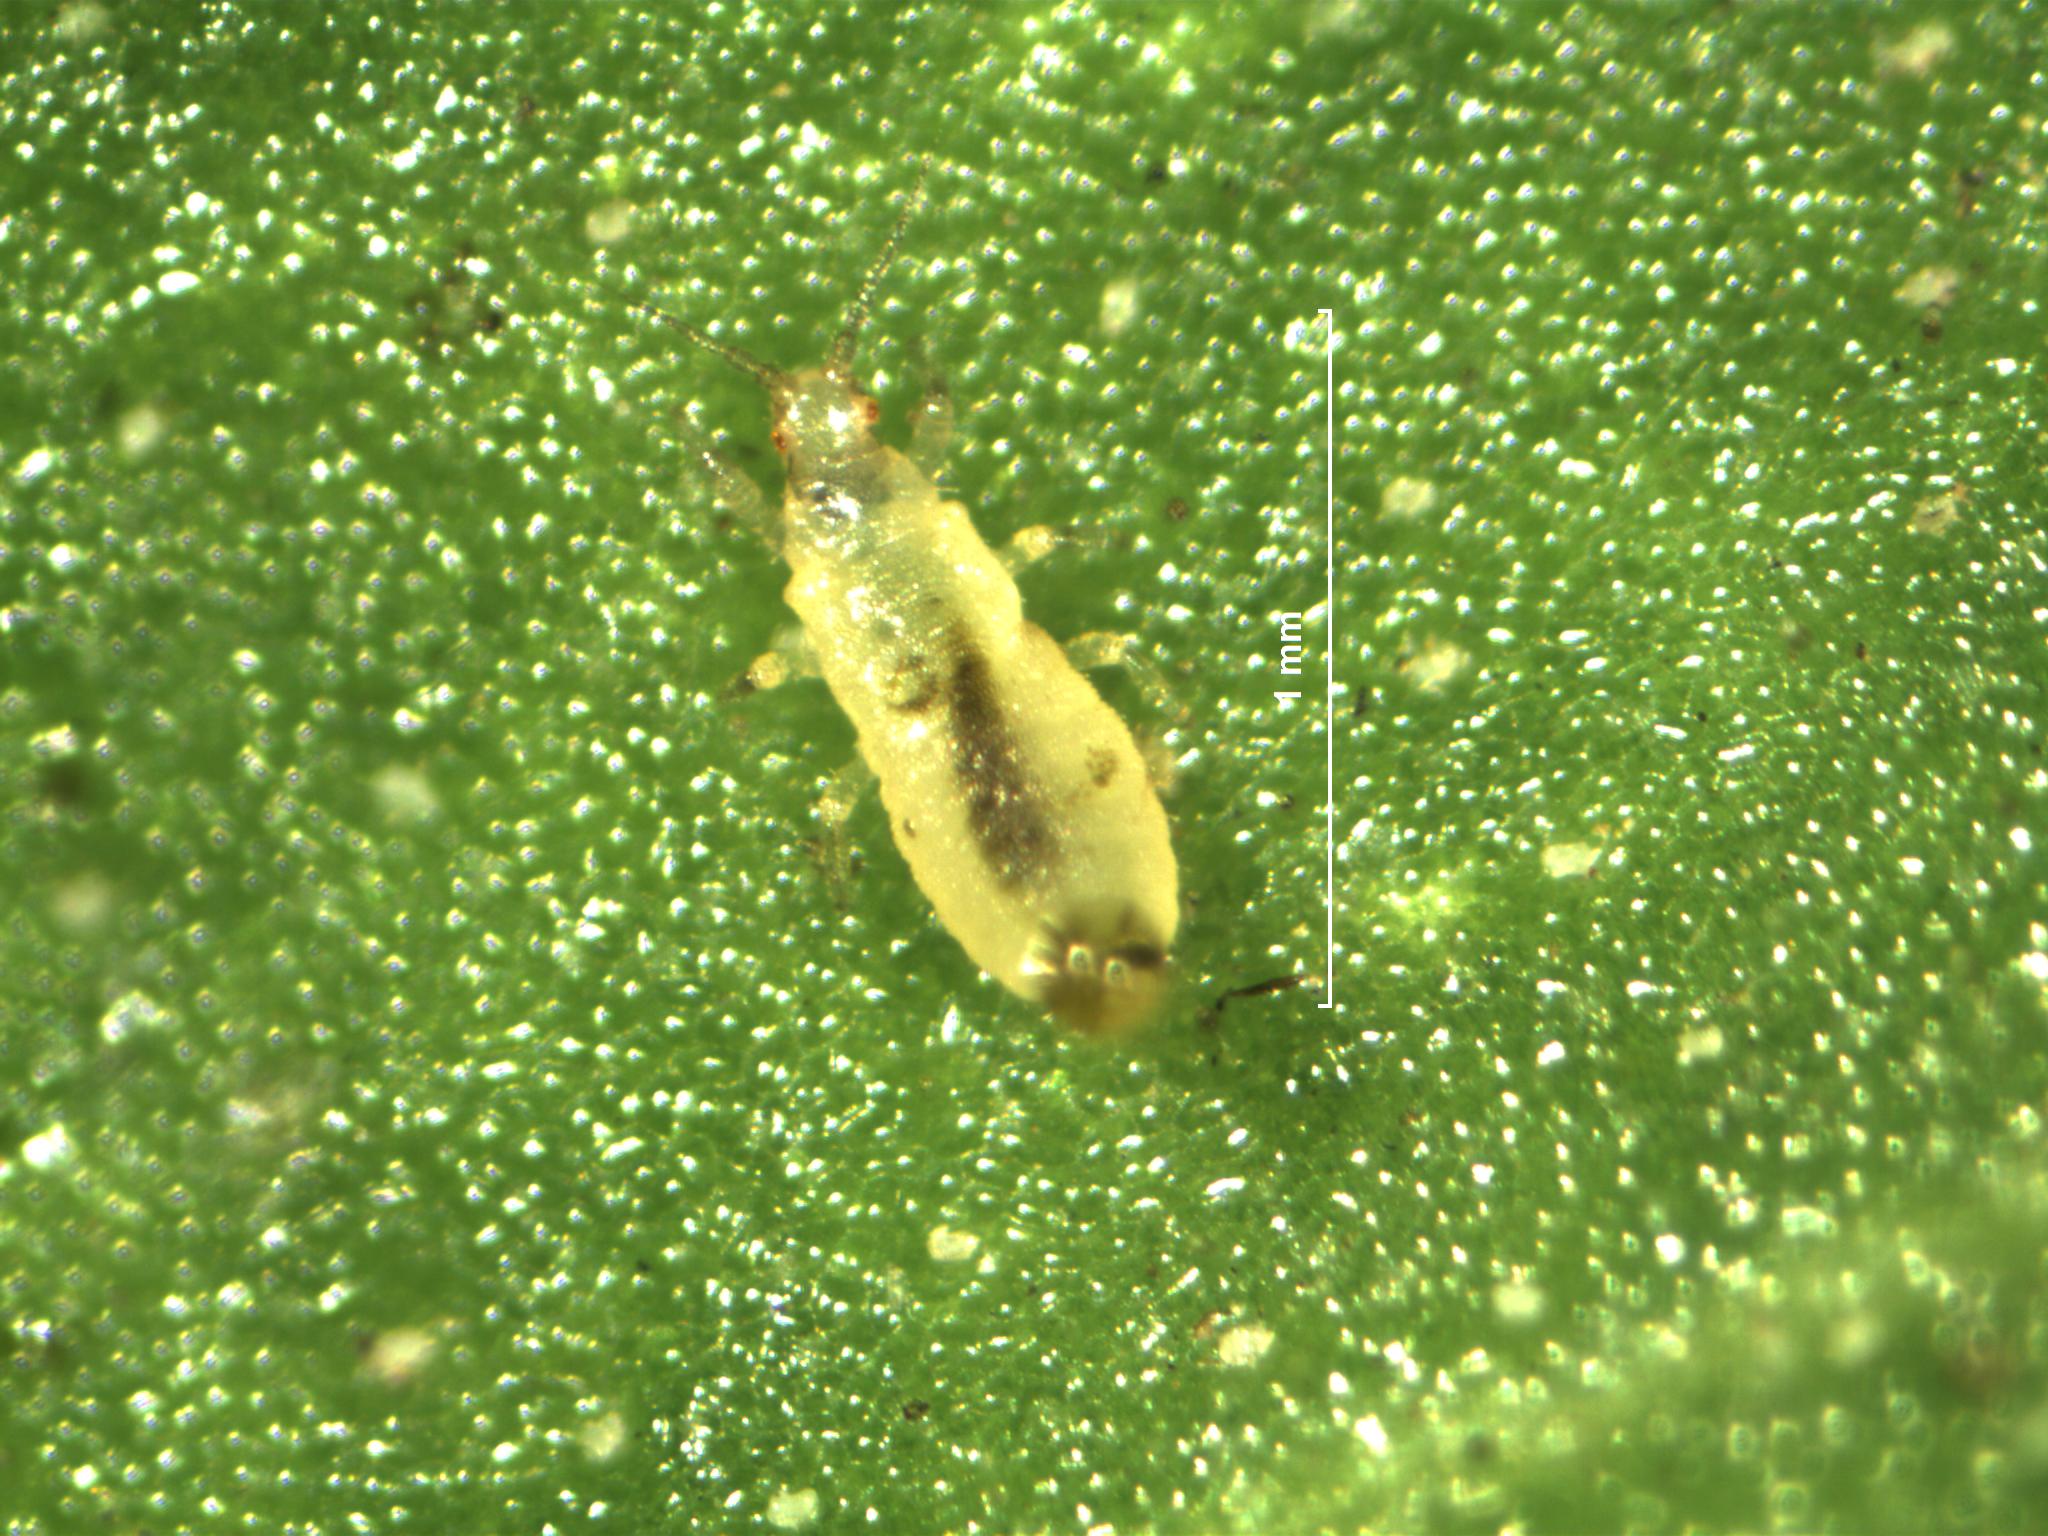 2nd instar larva